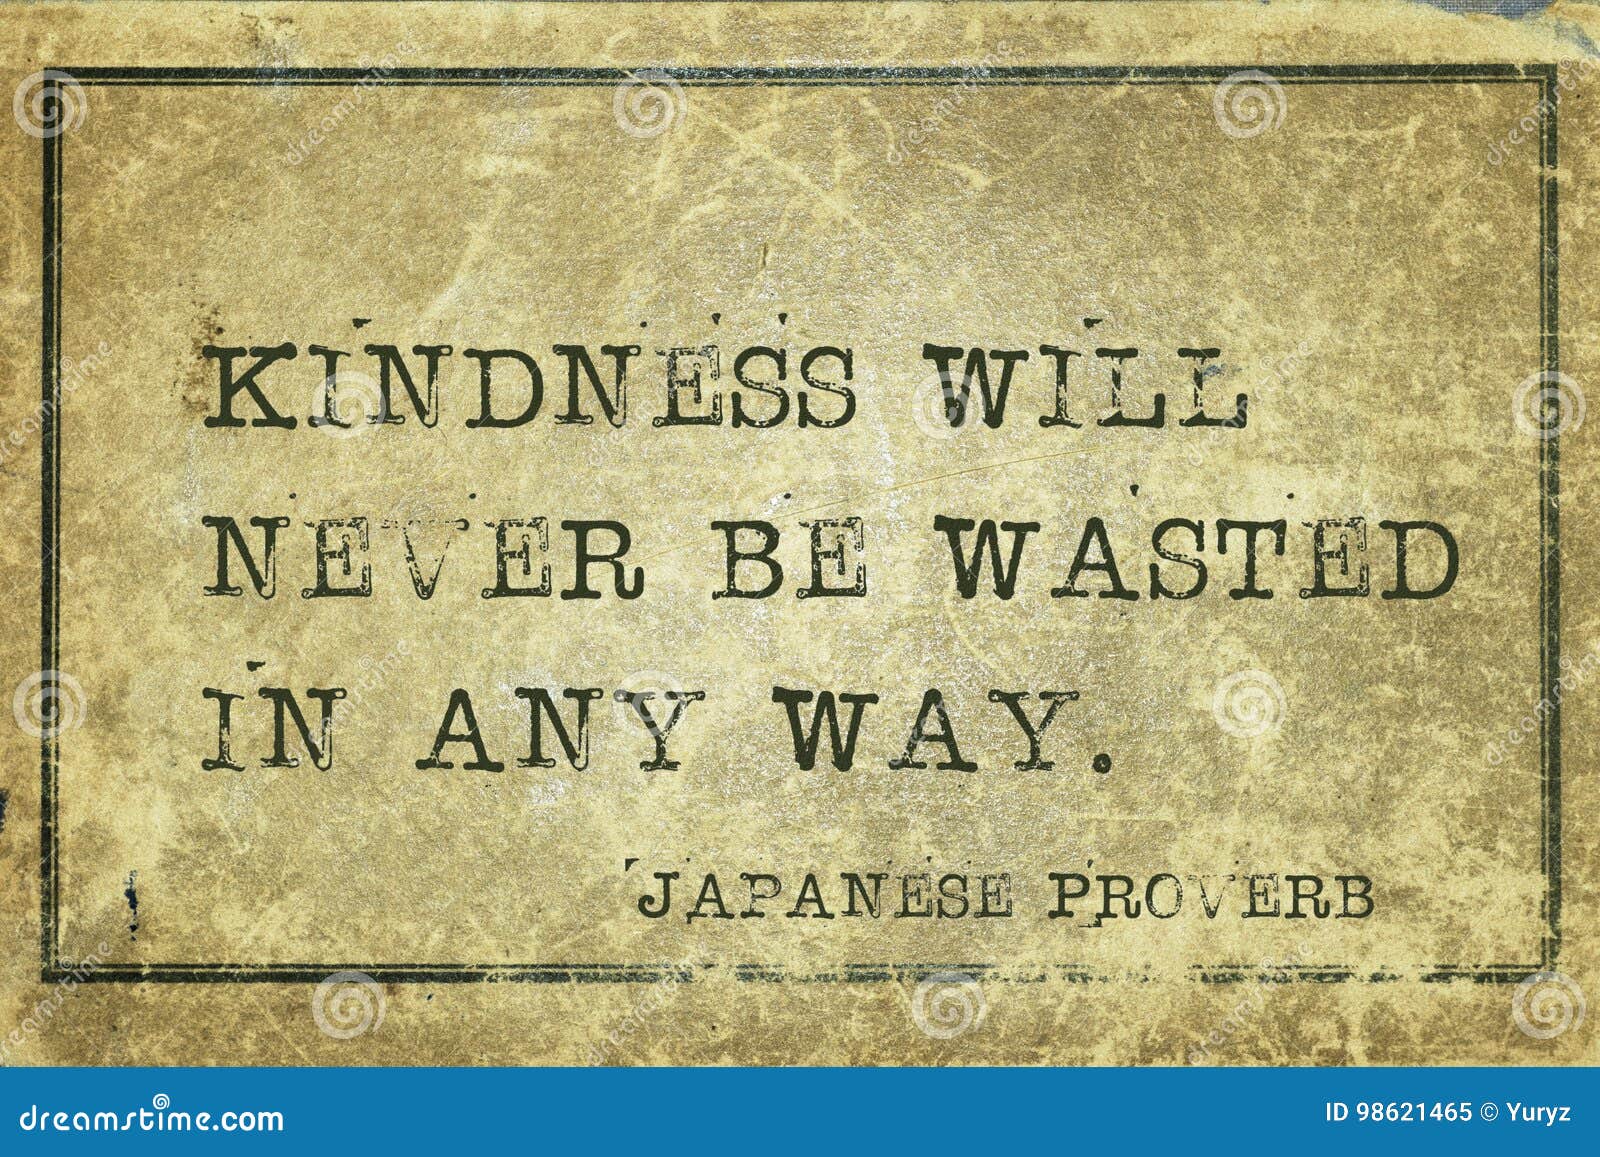 kindness will jp